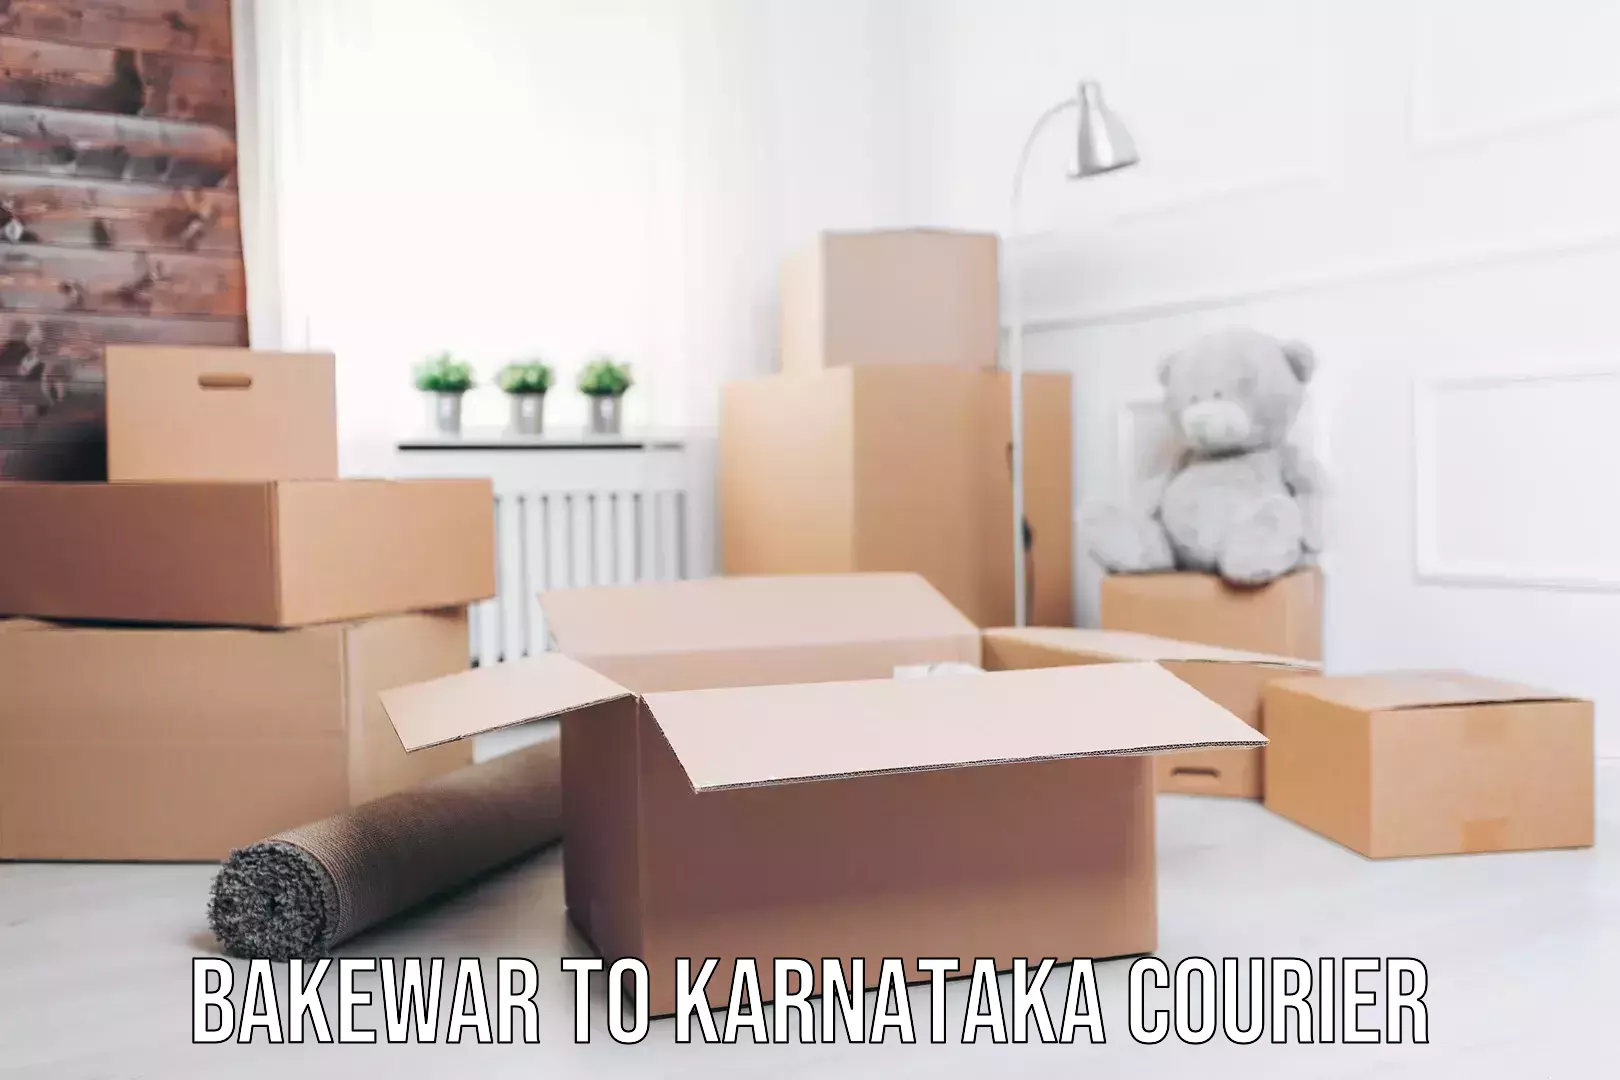 Expedited shipping methods Bakewar to Karnataka